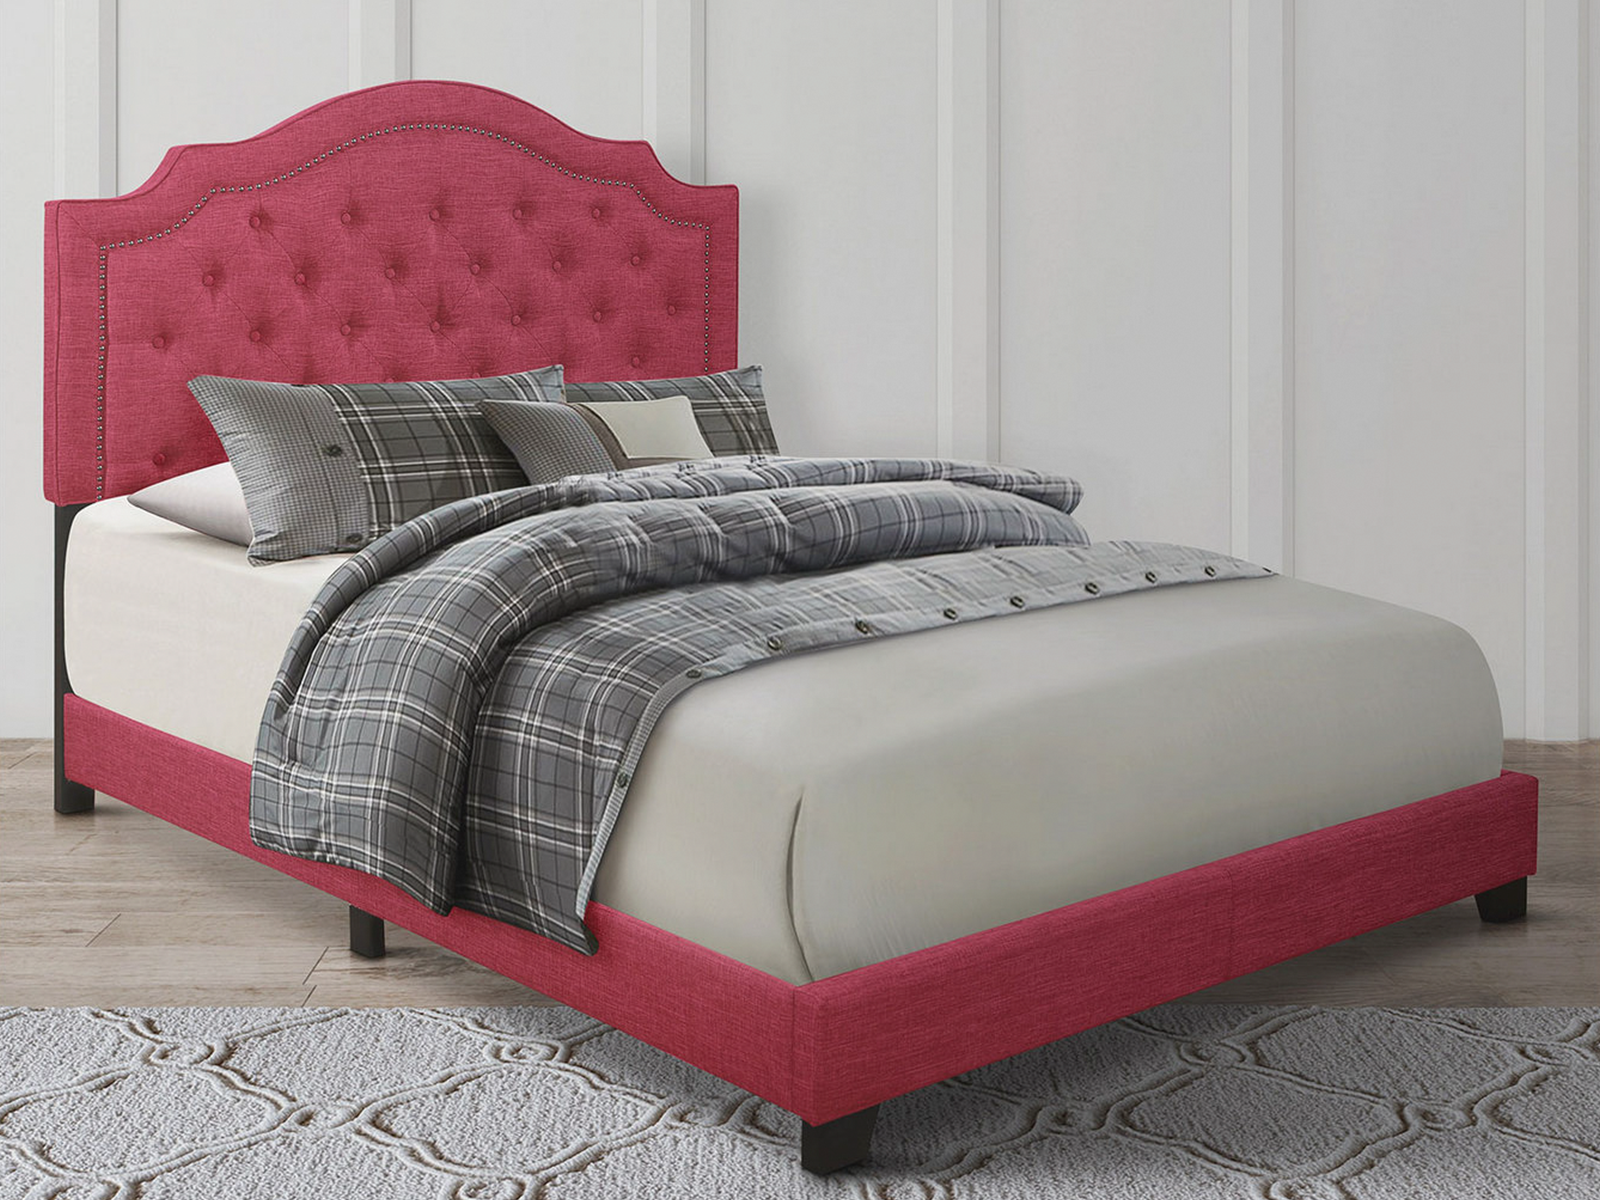 Homelegance Upholstered Bed Set | King | Harley Bed Frame & Headboard | Pink